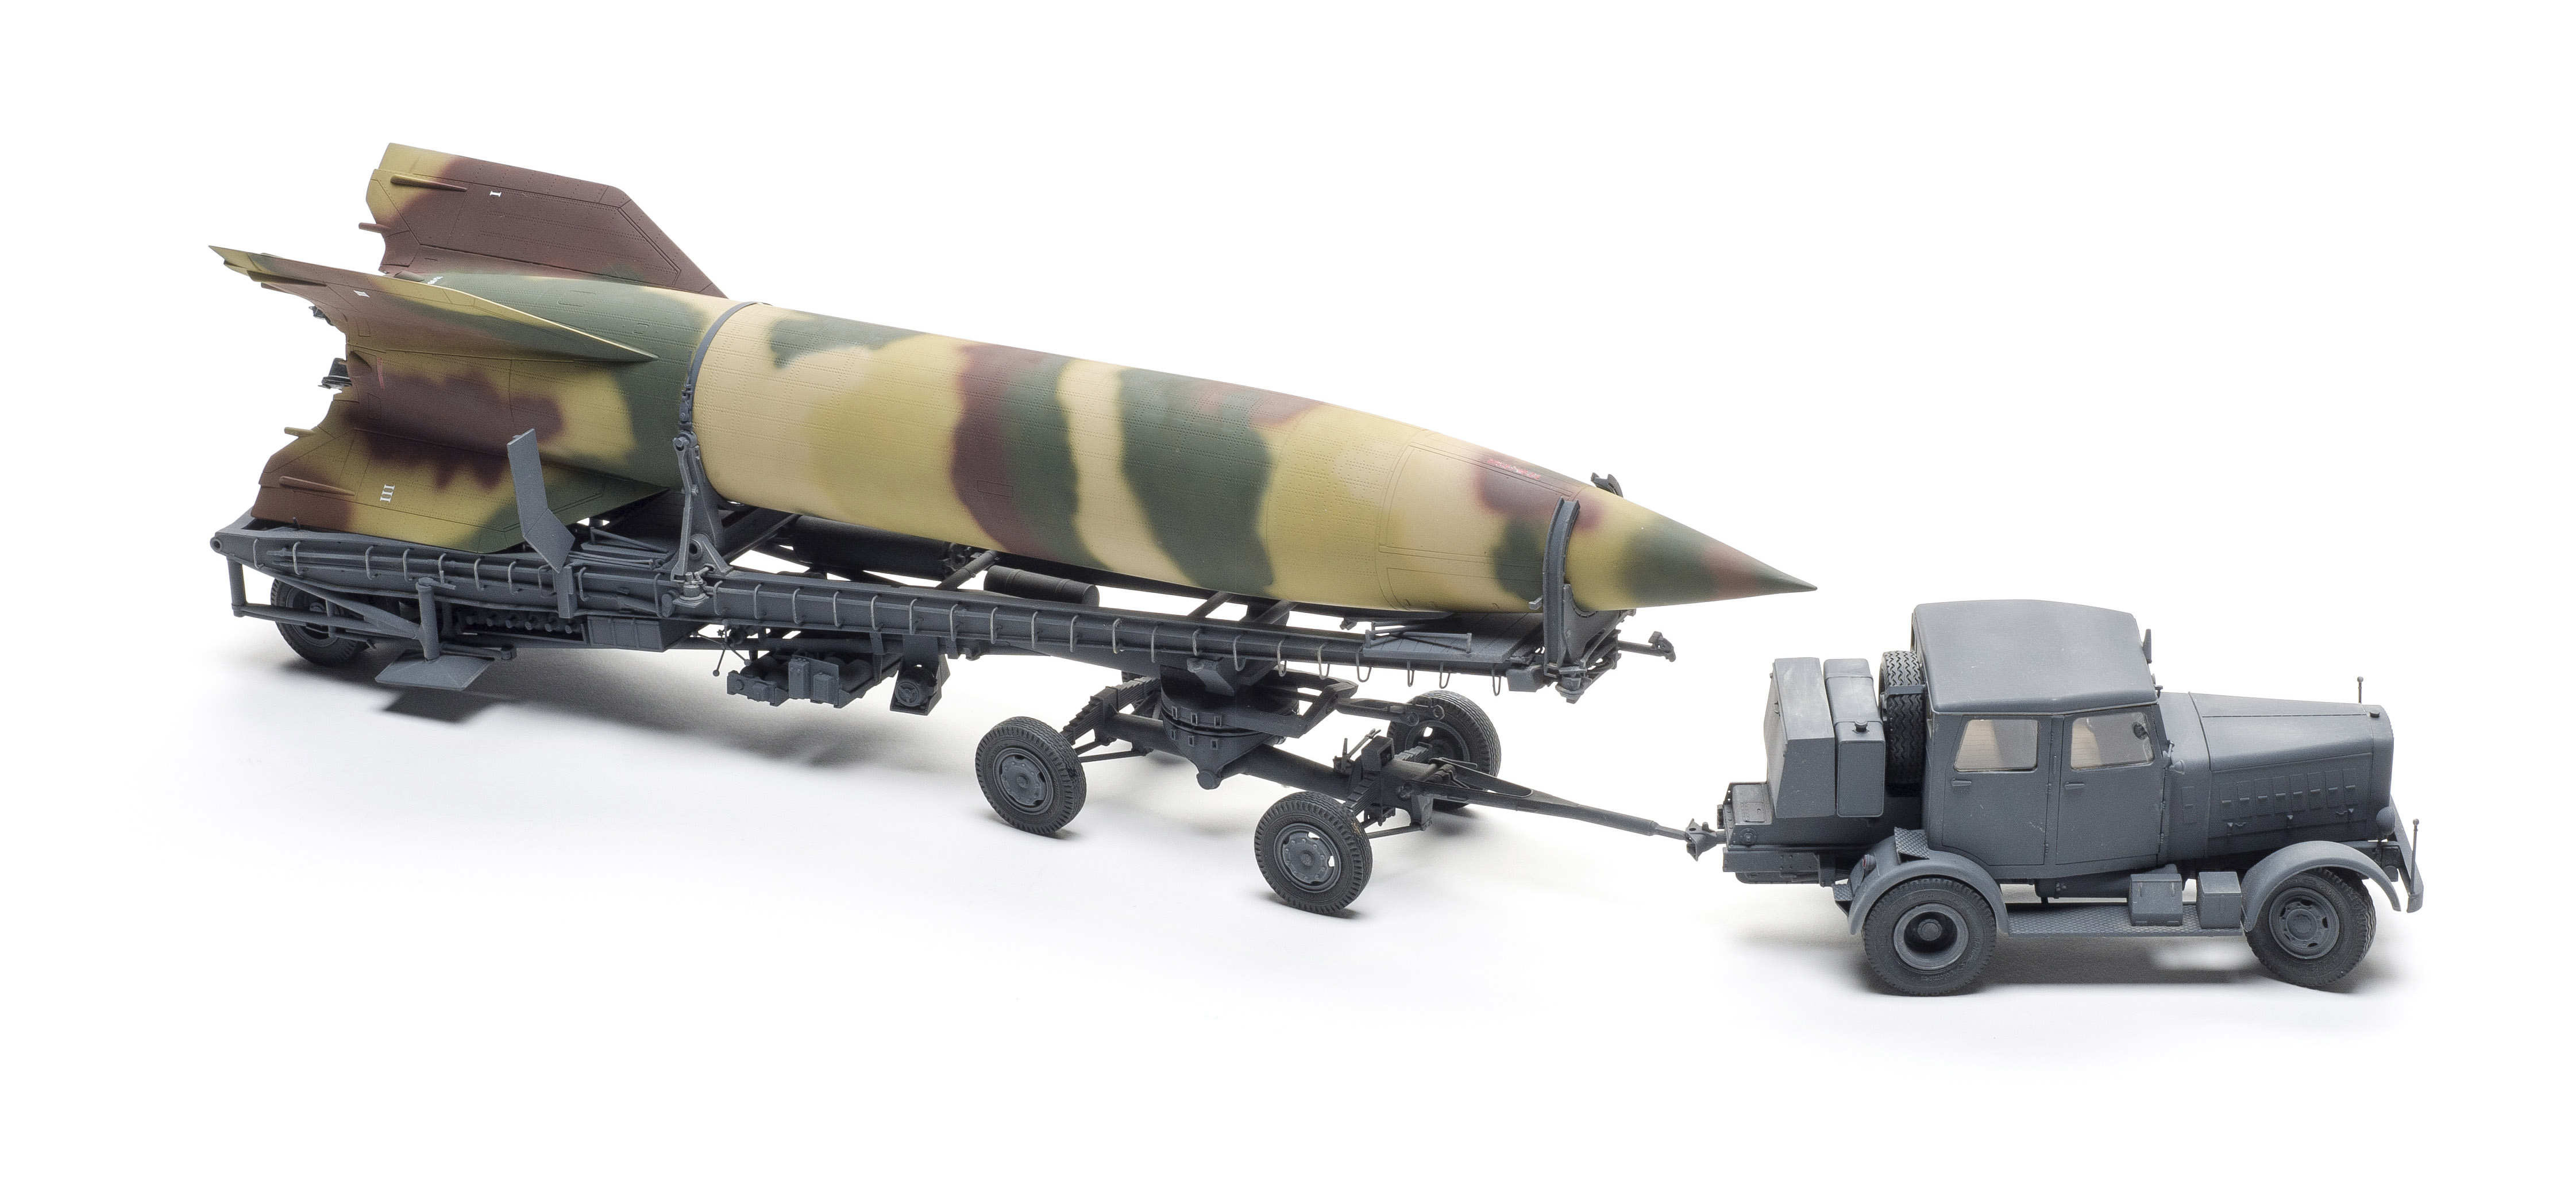 Takom V-2 Rocket, Meillerwagen, and Hanomag SS100 | Finescale